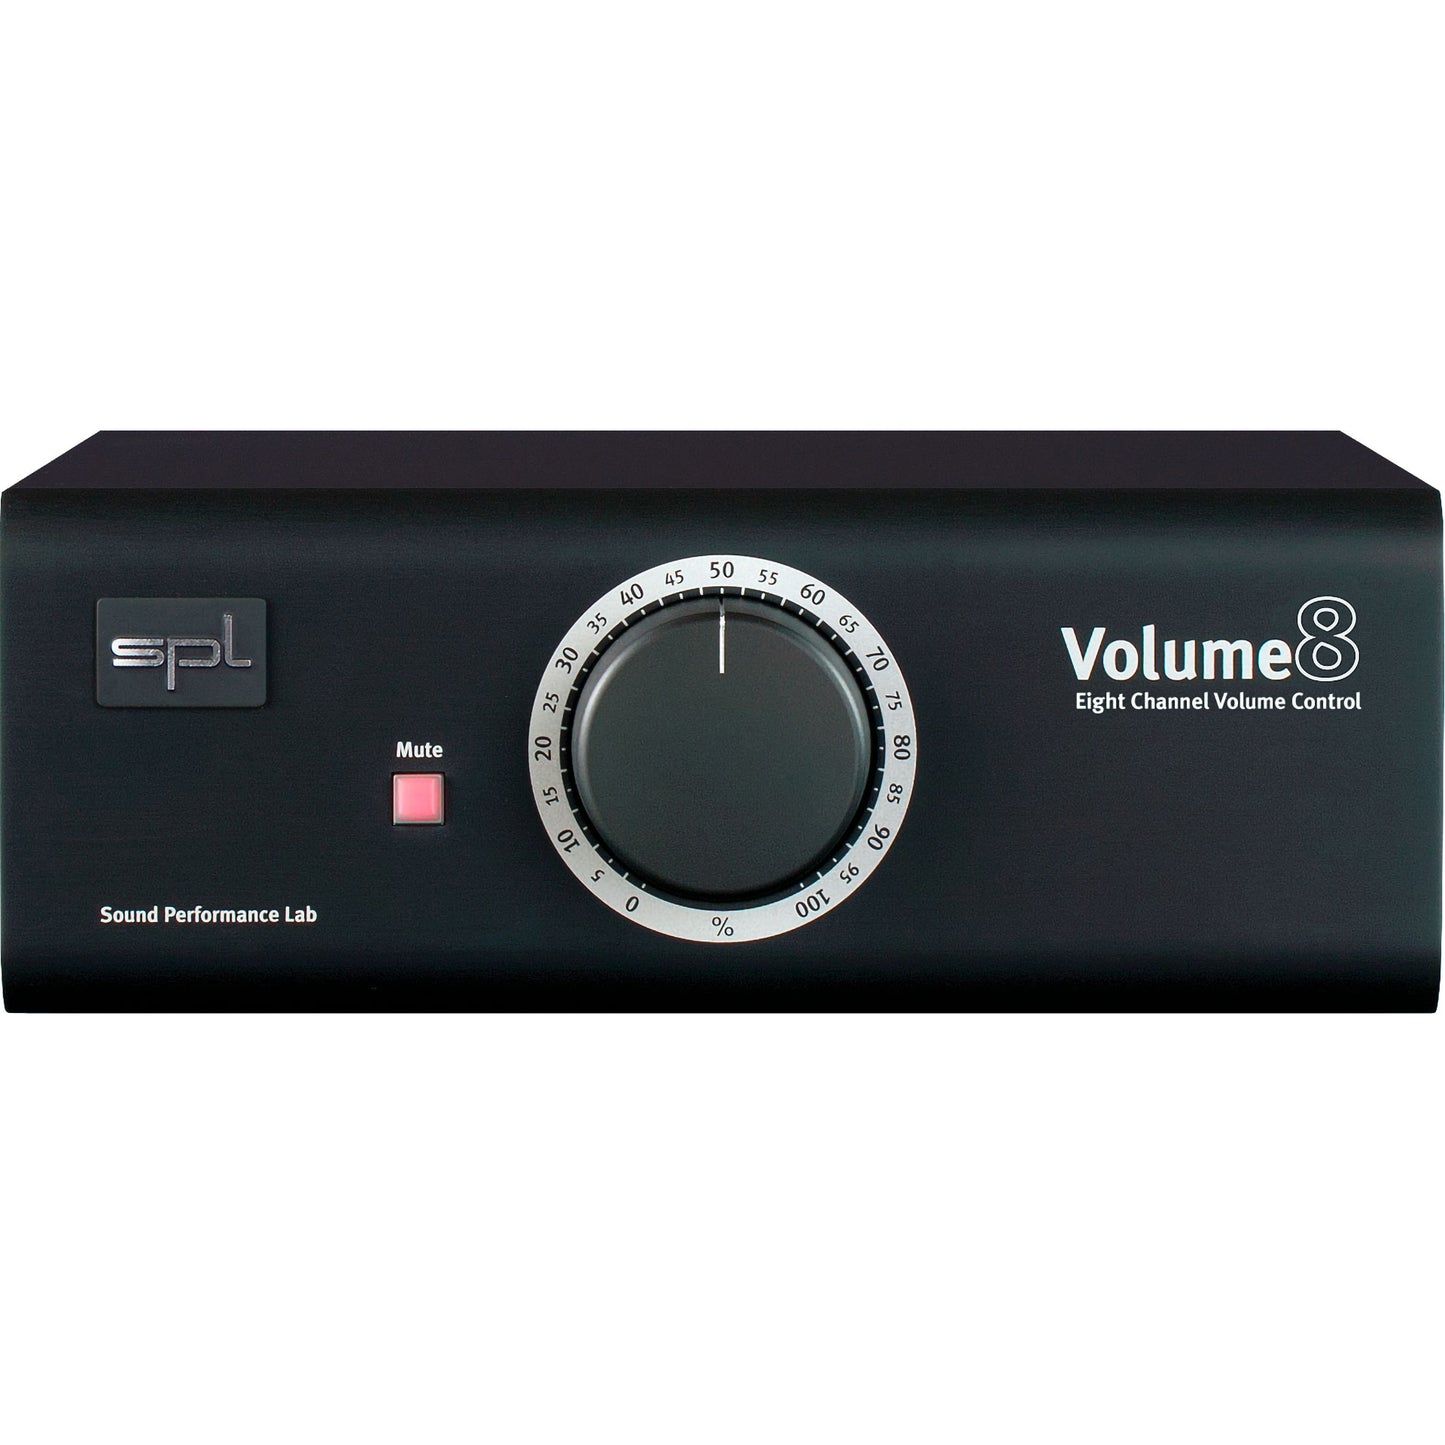 SPL Volume 8 Highend Multichannel Volume Controller